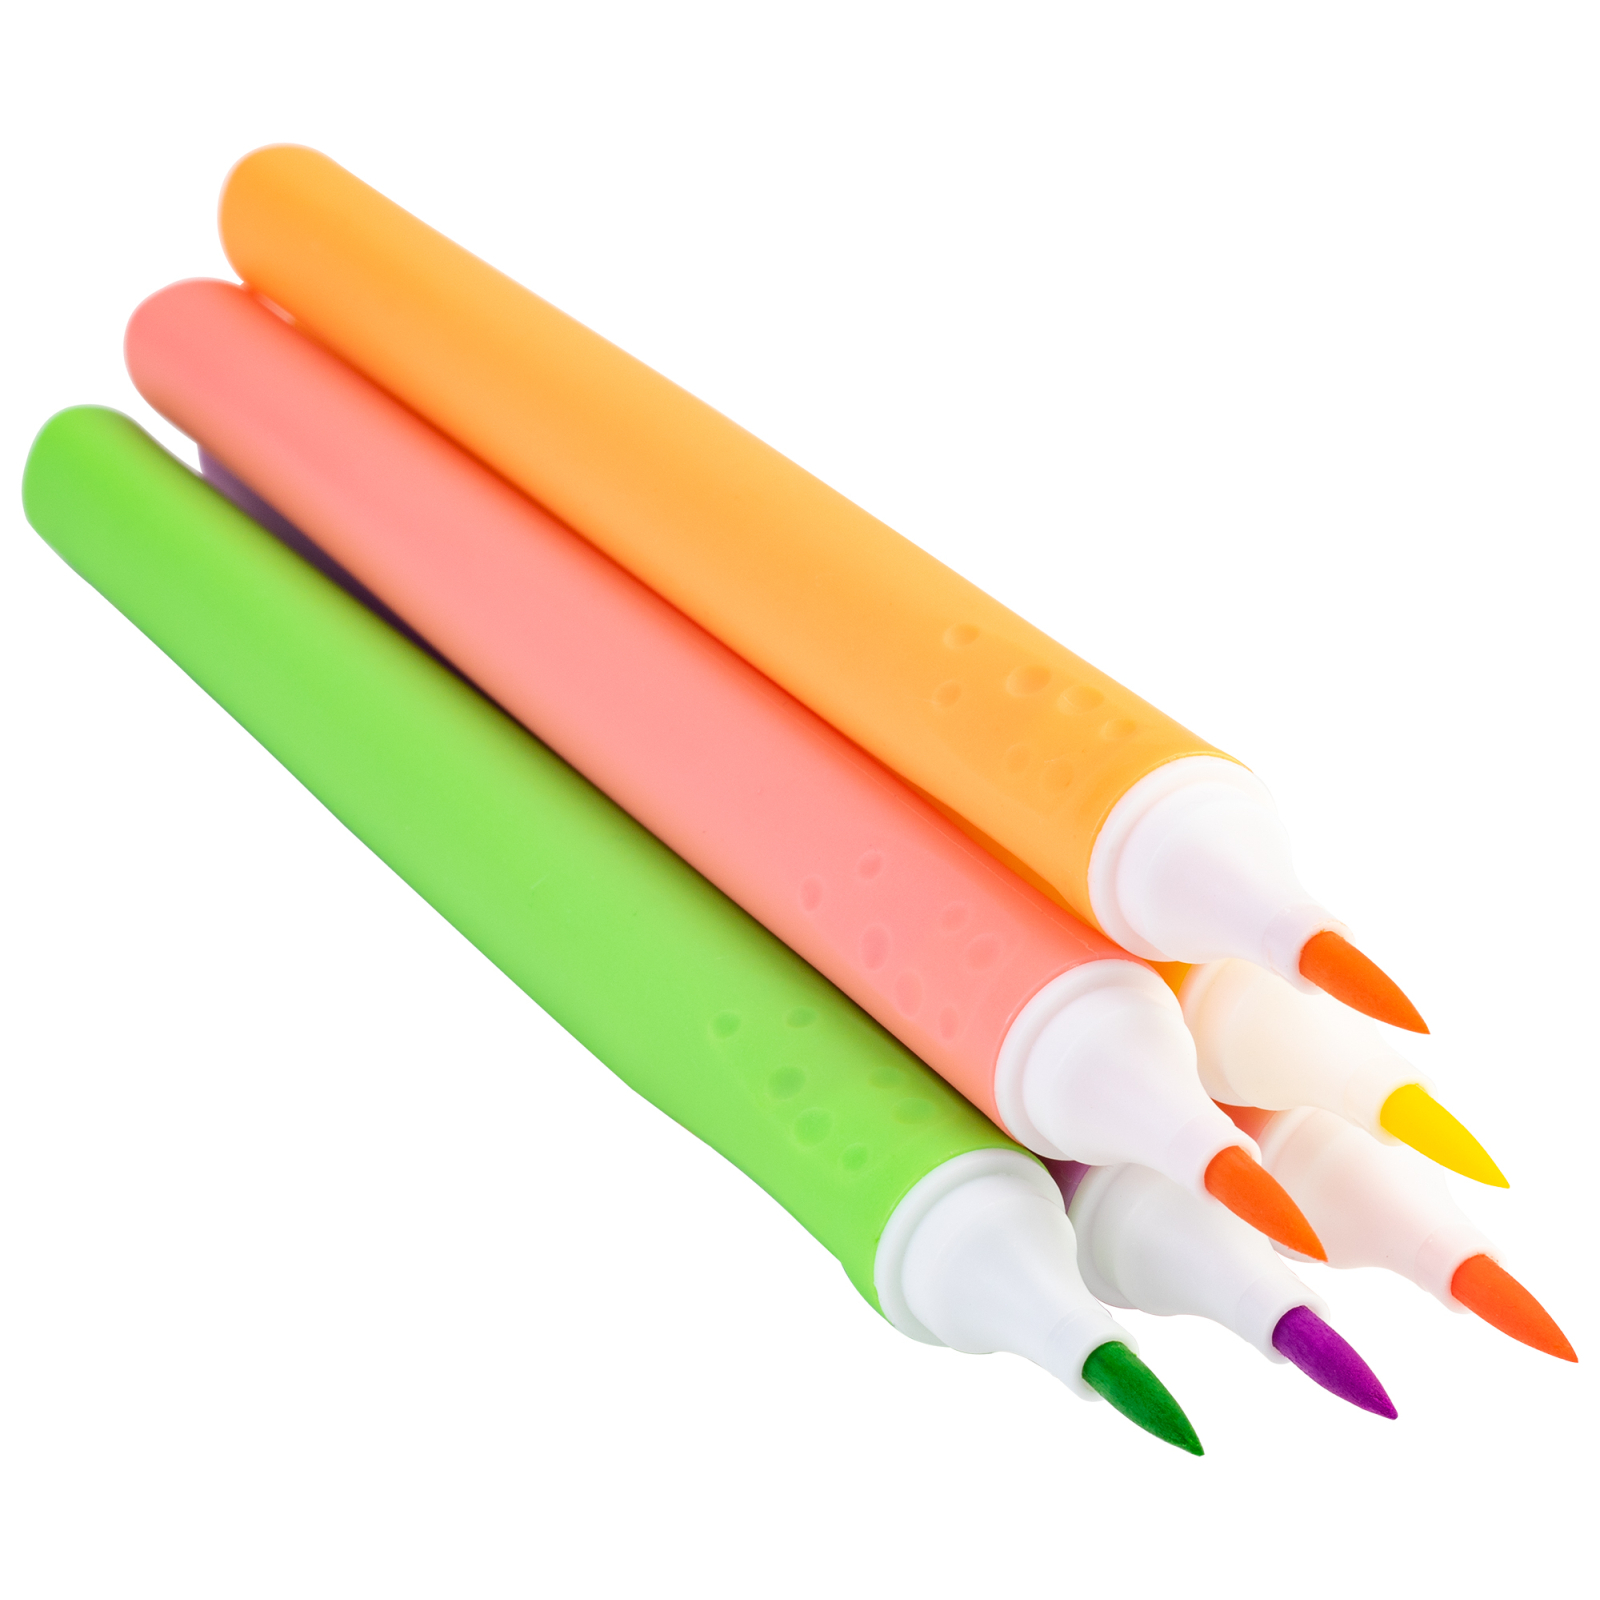 Фломастеры Maxi кисточки BRUSH-TIPPED Jumbo, 10 пастельных цветов, линия 0,5-6 мм (MX15237) изображение 2